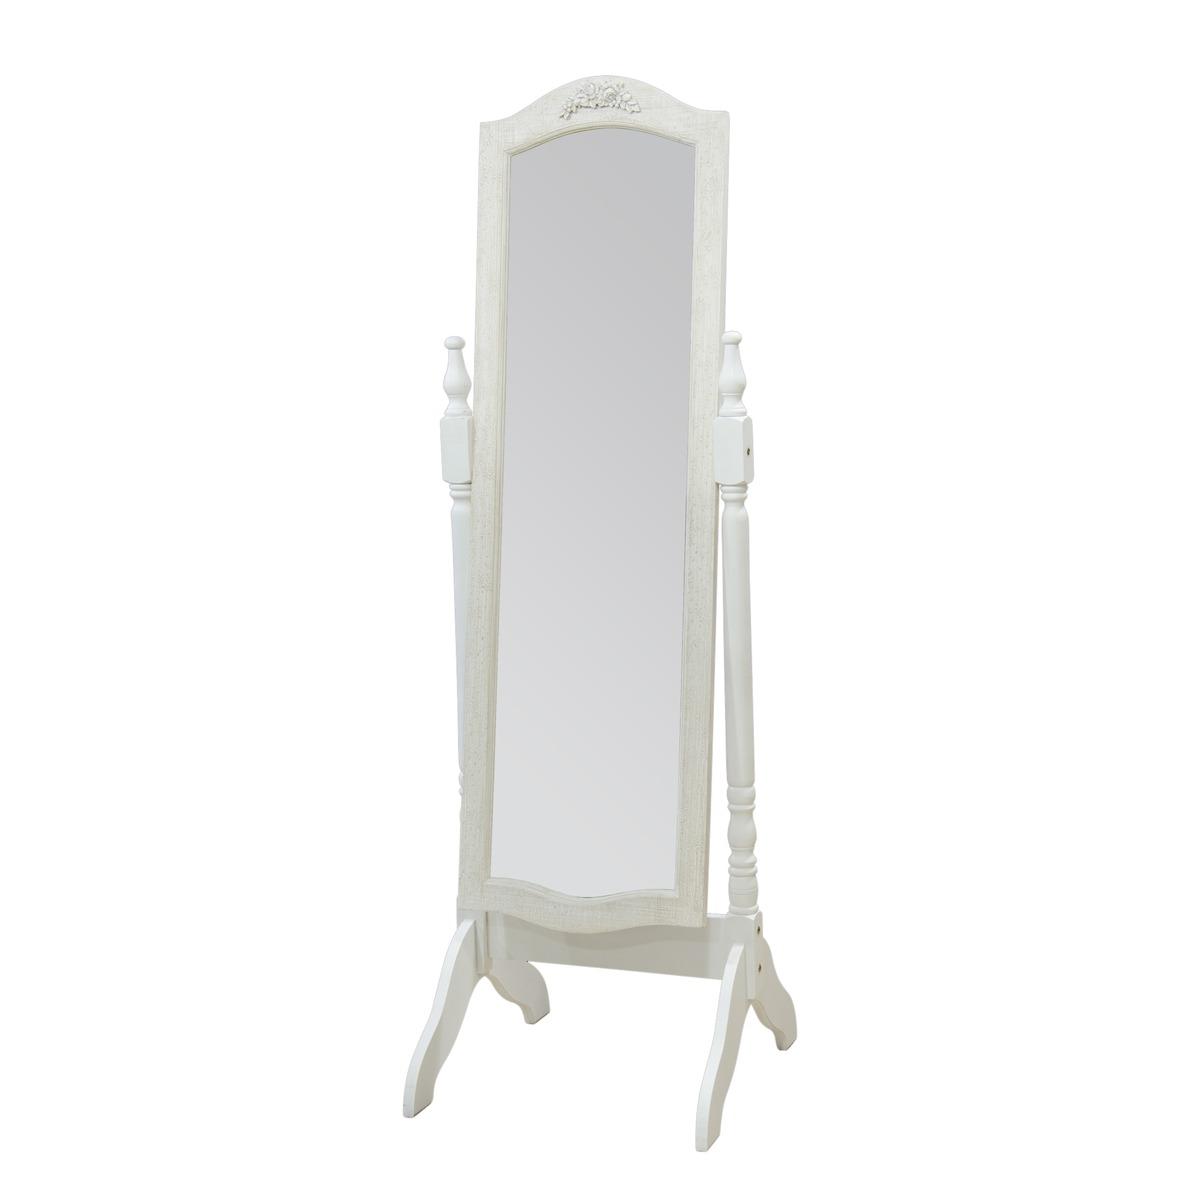 Miroir psyché sur pieds - 50 x 51 x H 157 cm - Blanc